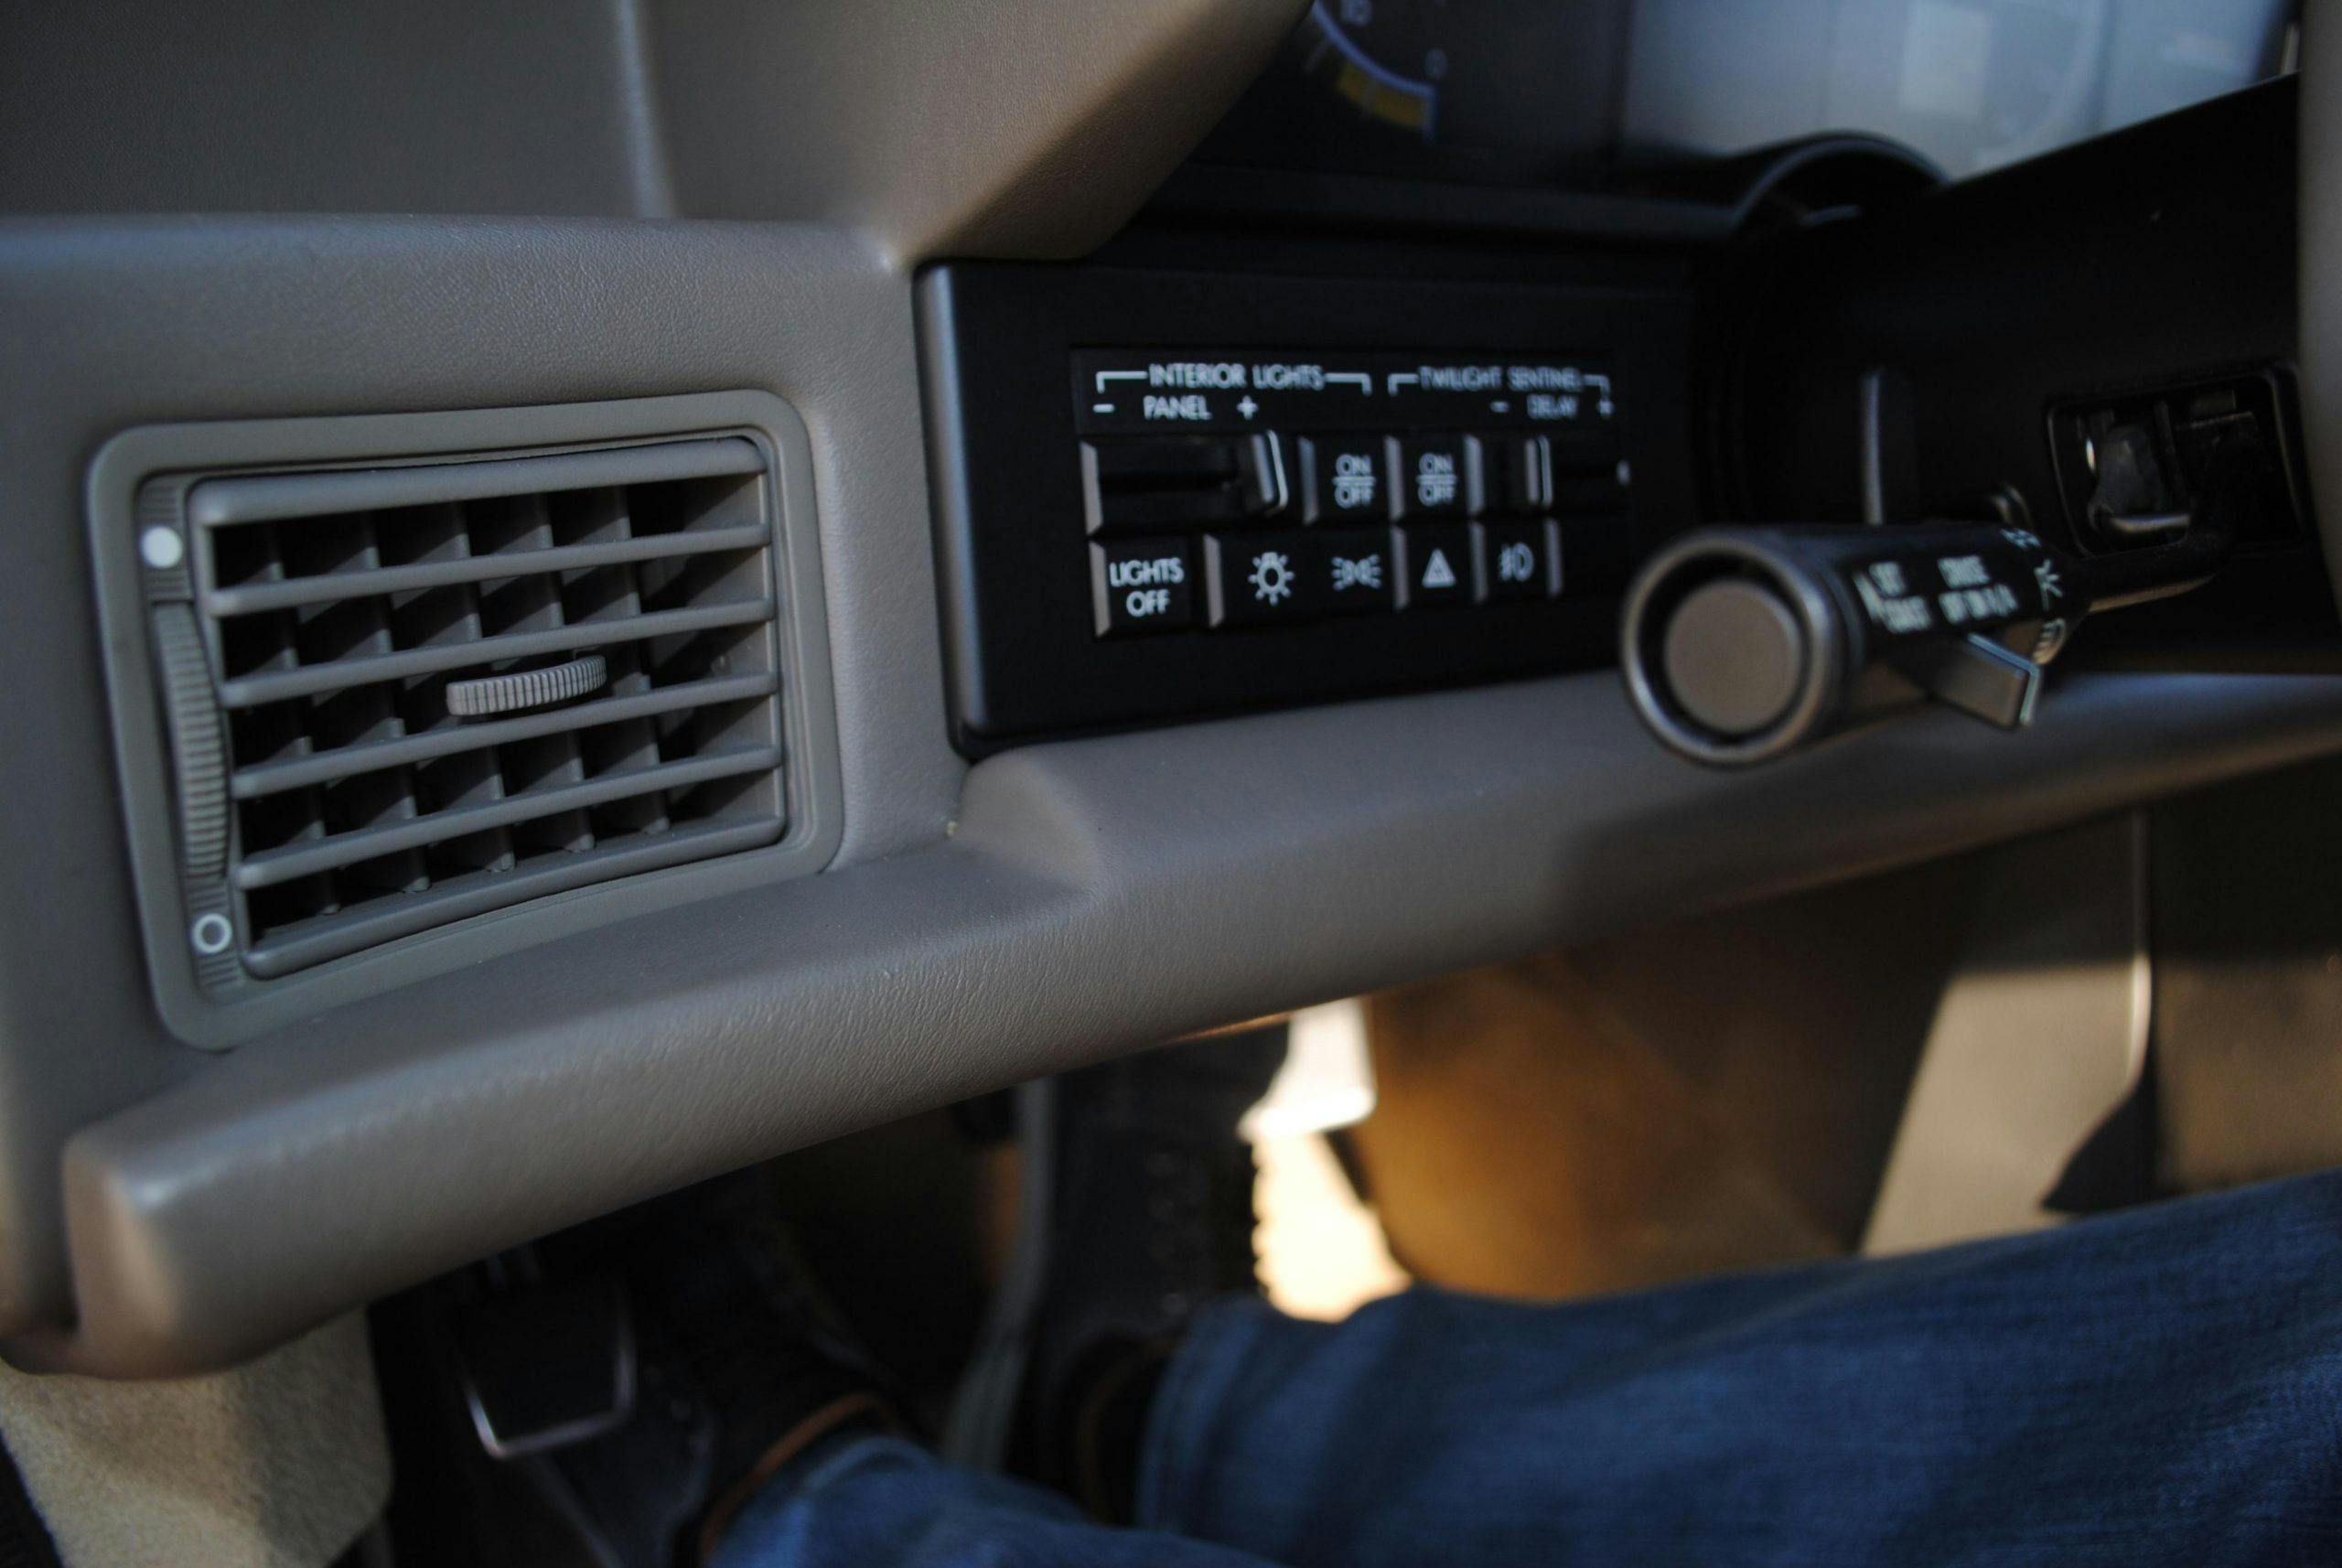 1993 Cadillac Allante light buttons